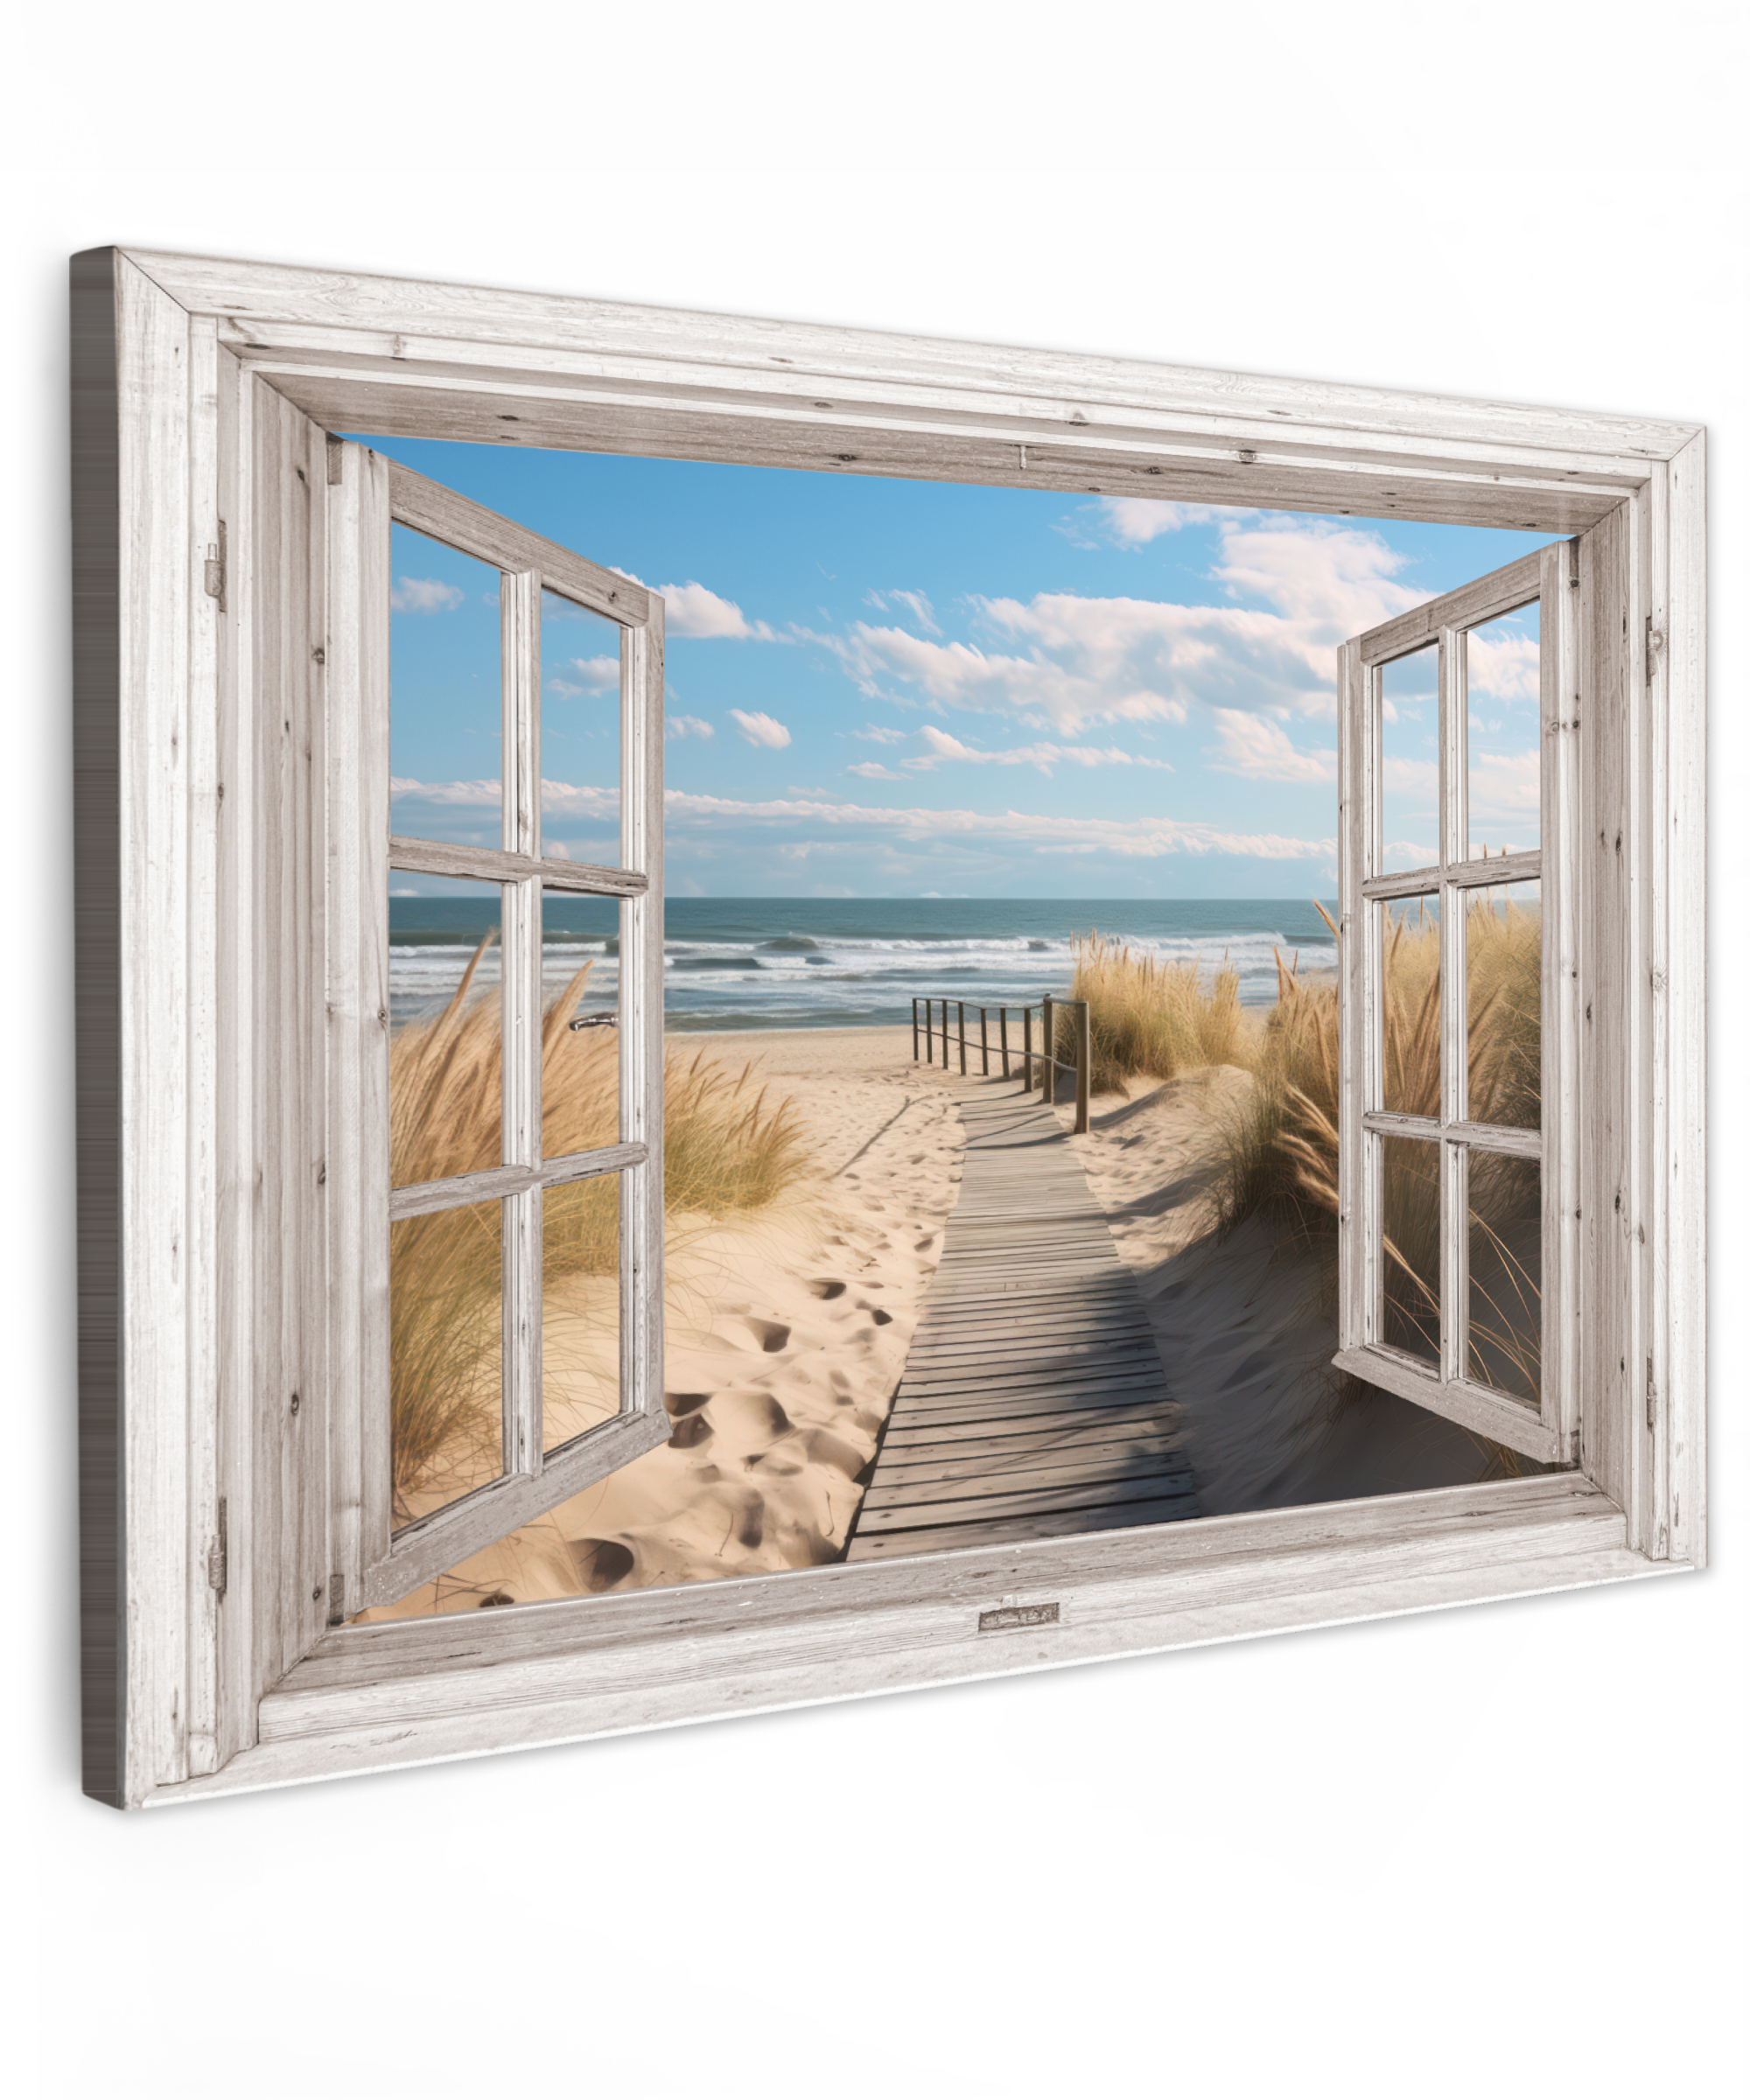 Tableau sur toile - Fenêtre - Mer - Côte - Nature - Vue à travers - Plage - Mer des Wadden